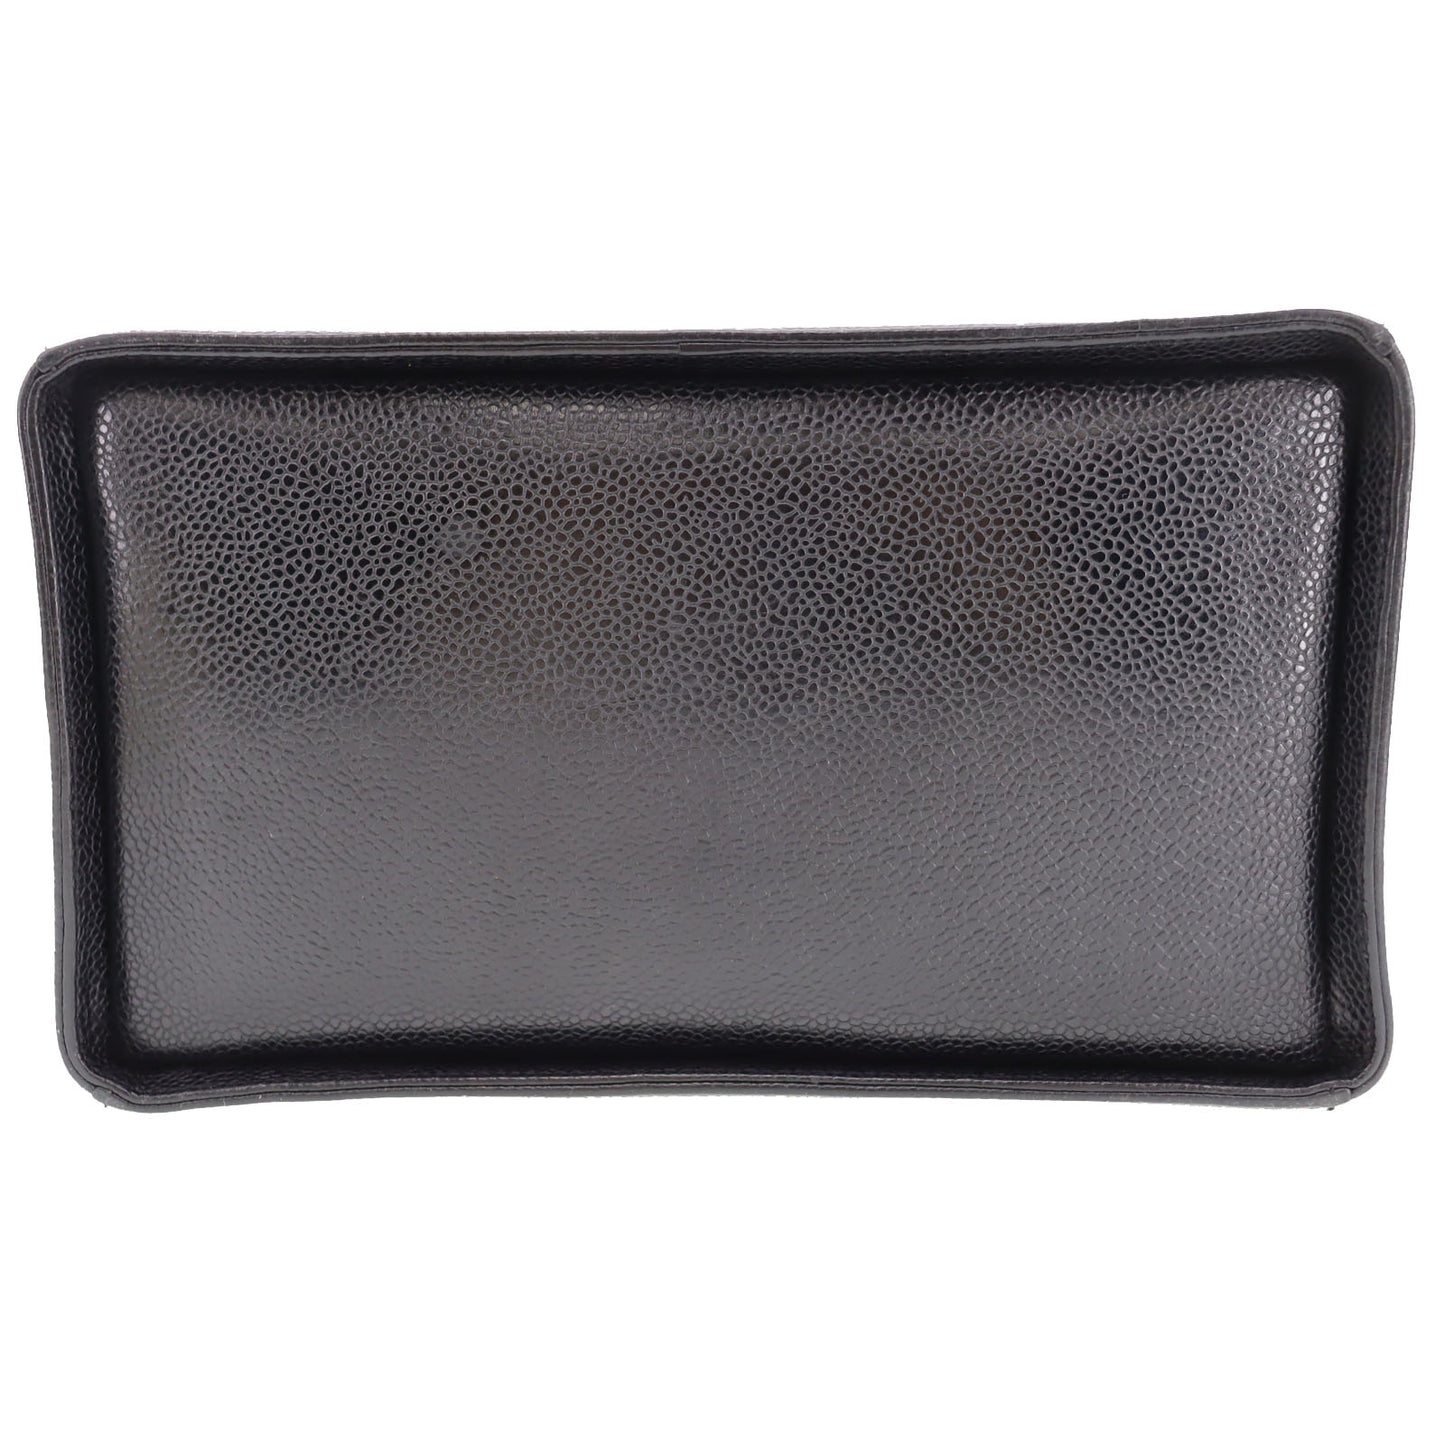 CHANEL Shoulder Handbag Vanity Caviar Skin Leather #BR452